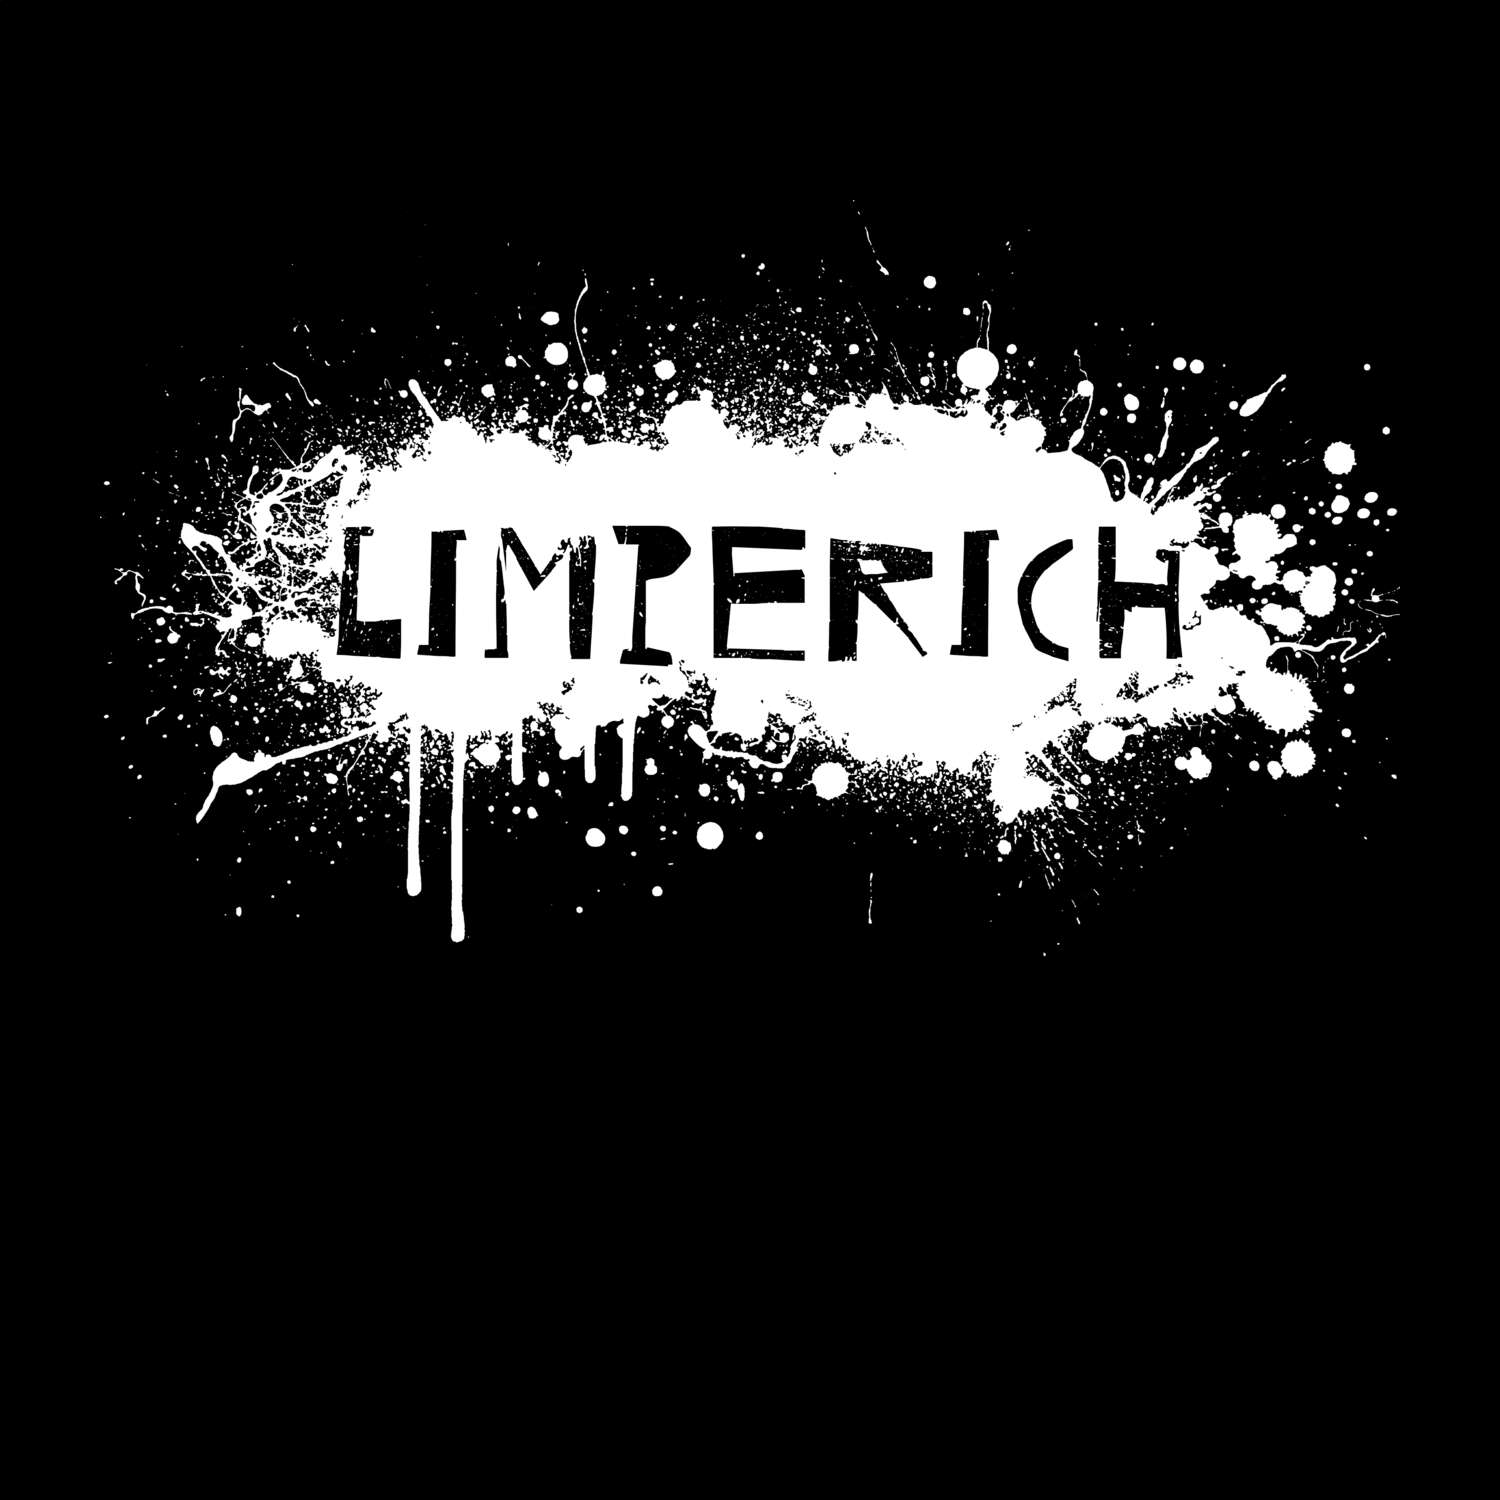 Limperich T-Shirt »Paint Splash Punk«